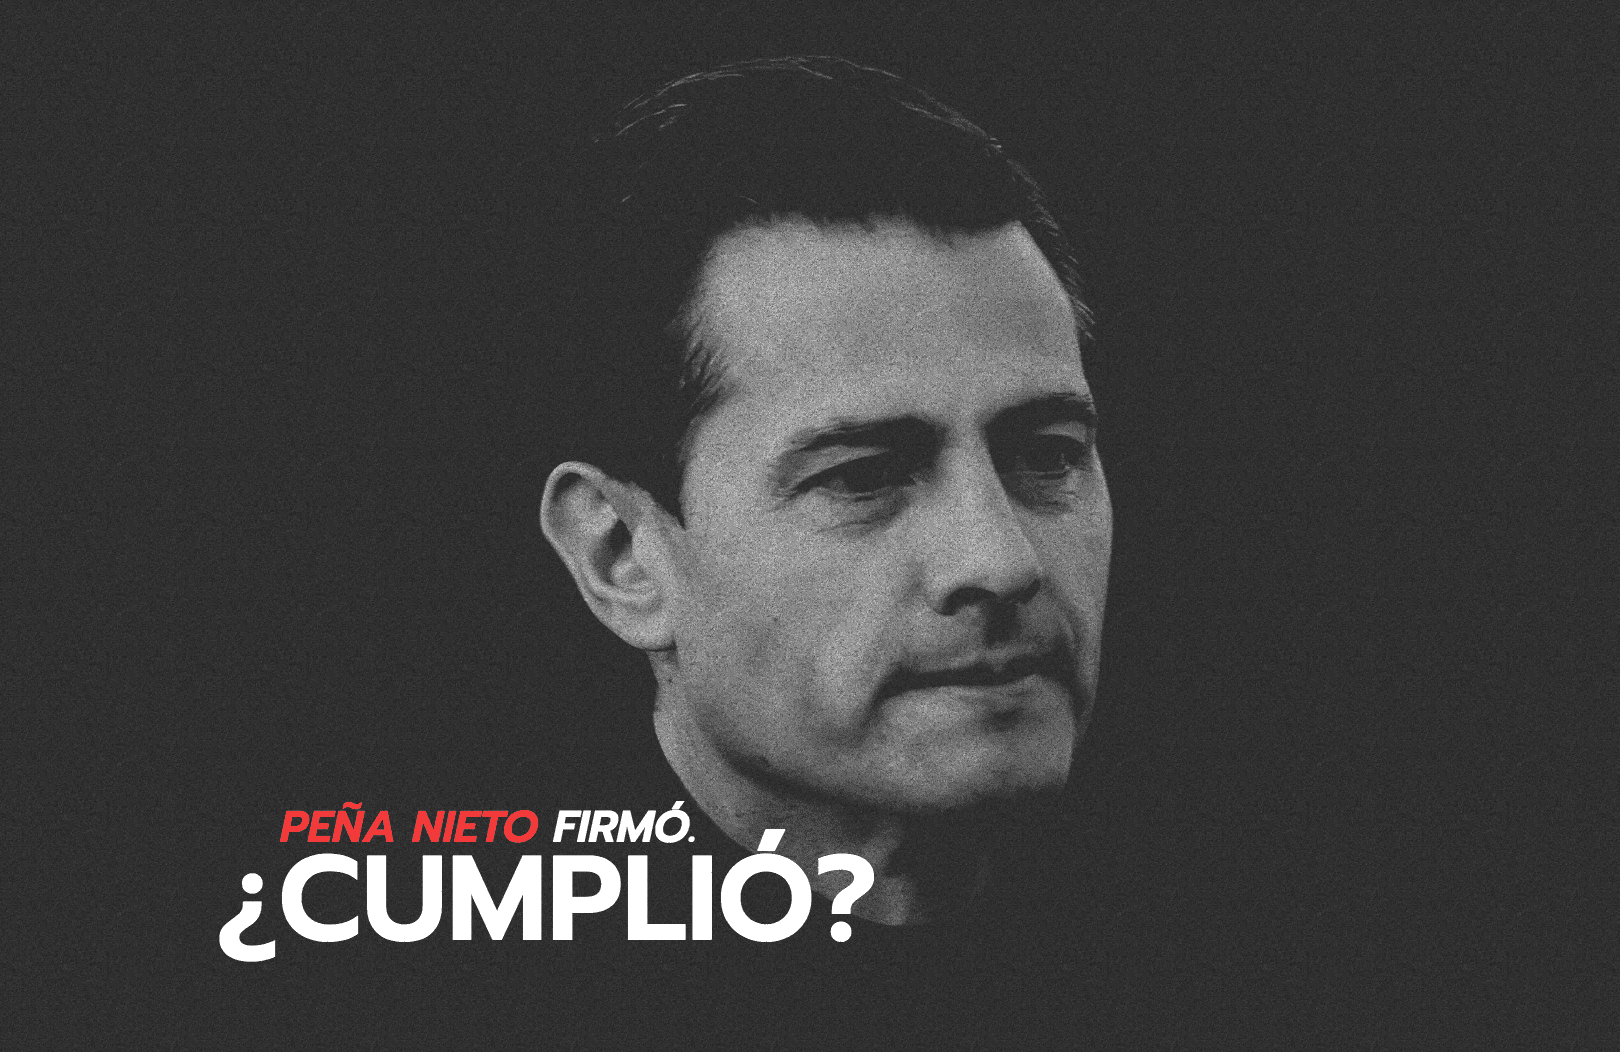 #CompromisosDePeña | Peña Nieto firmó. ¿Cumplió?